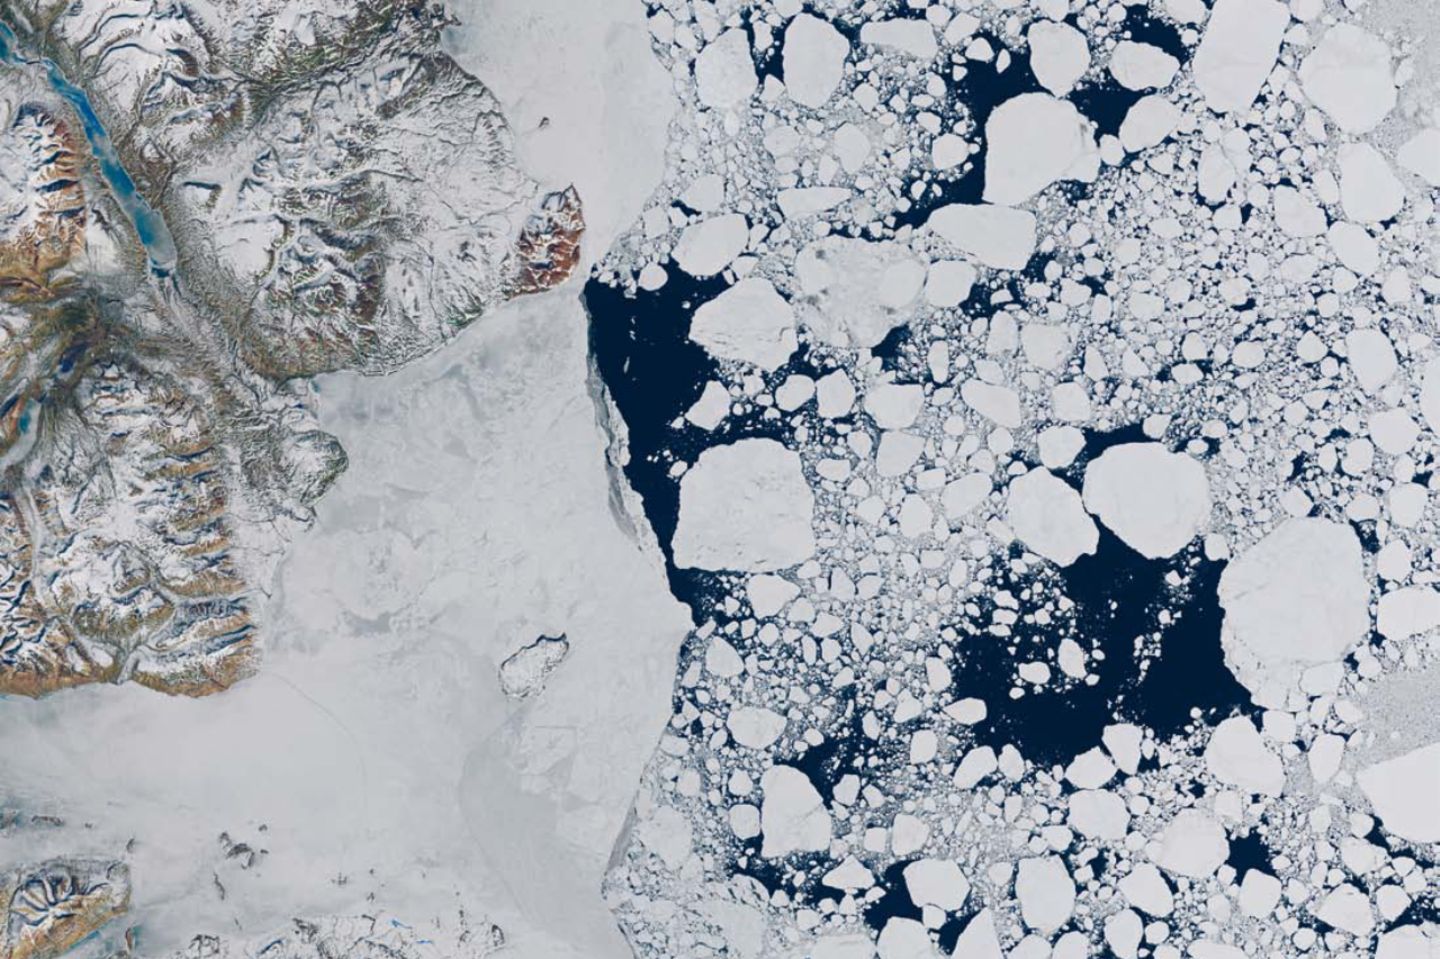 Zerfallende Eisflächen in der Arktis